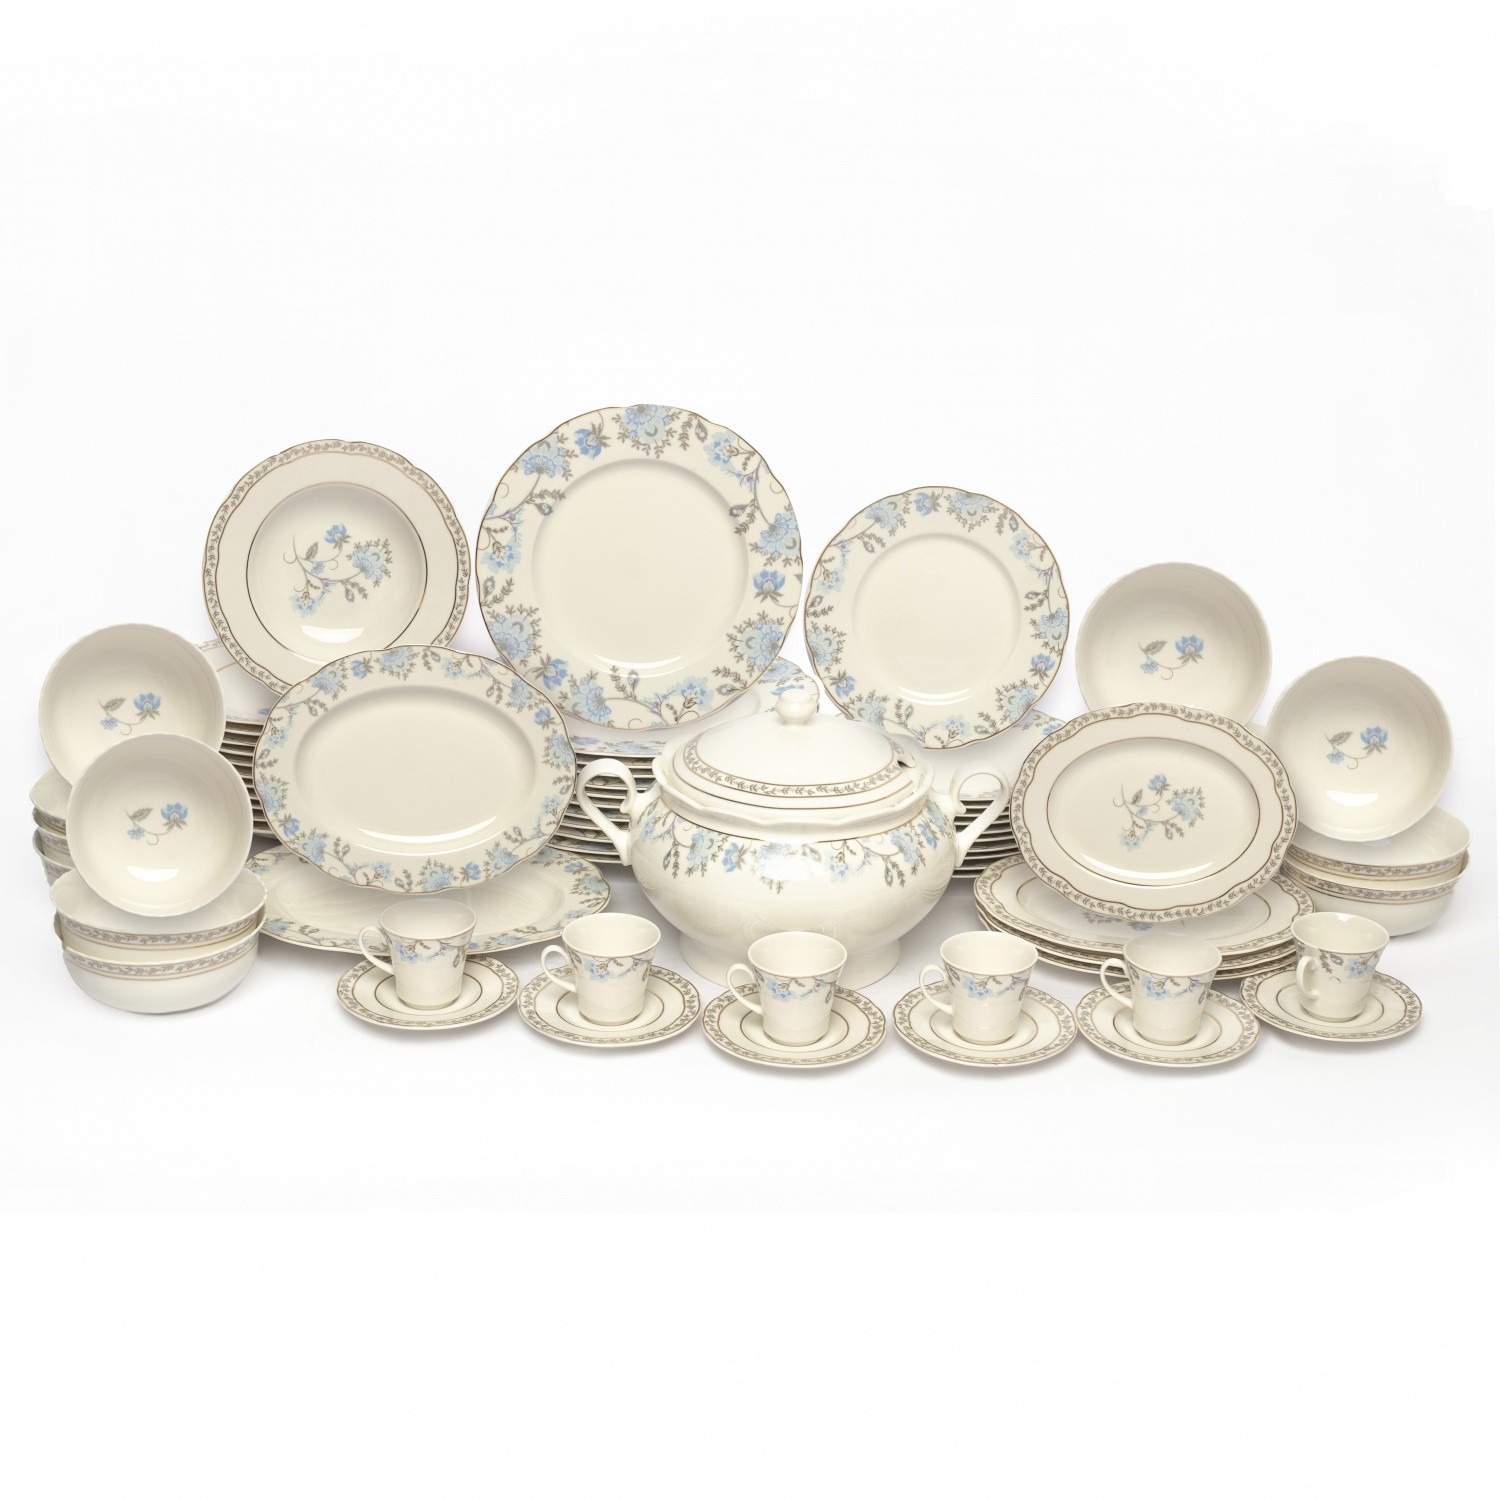 Комплект столовой посуды Kutahya porselen Olympos, 68 предметов цена и фото